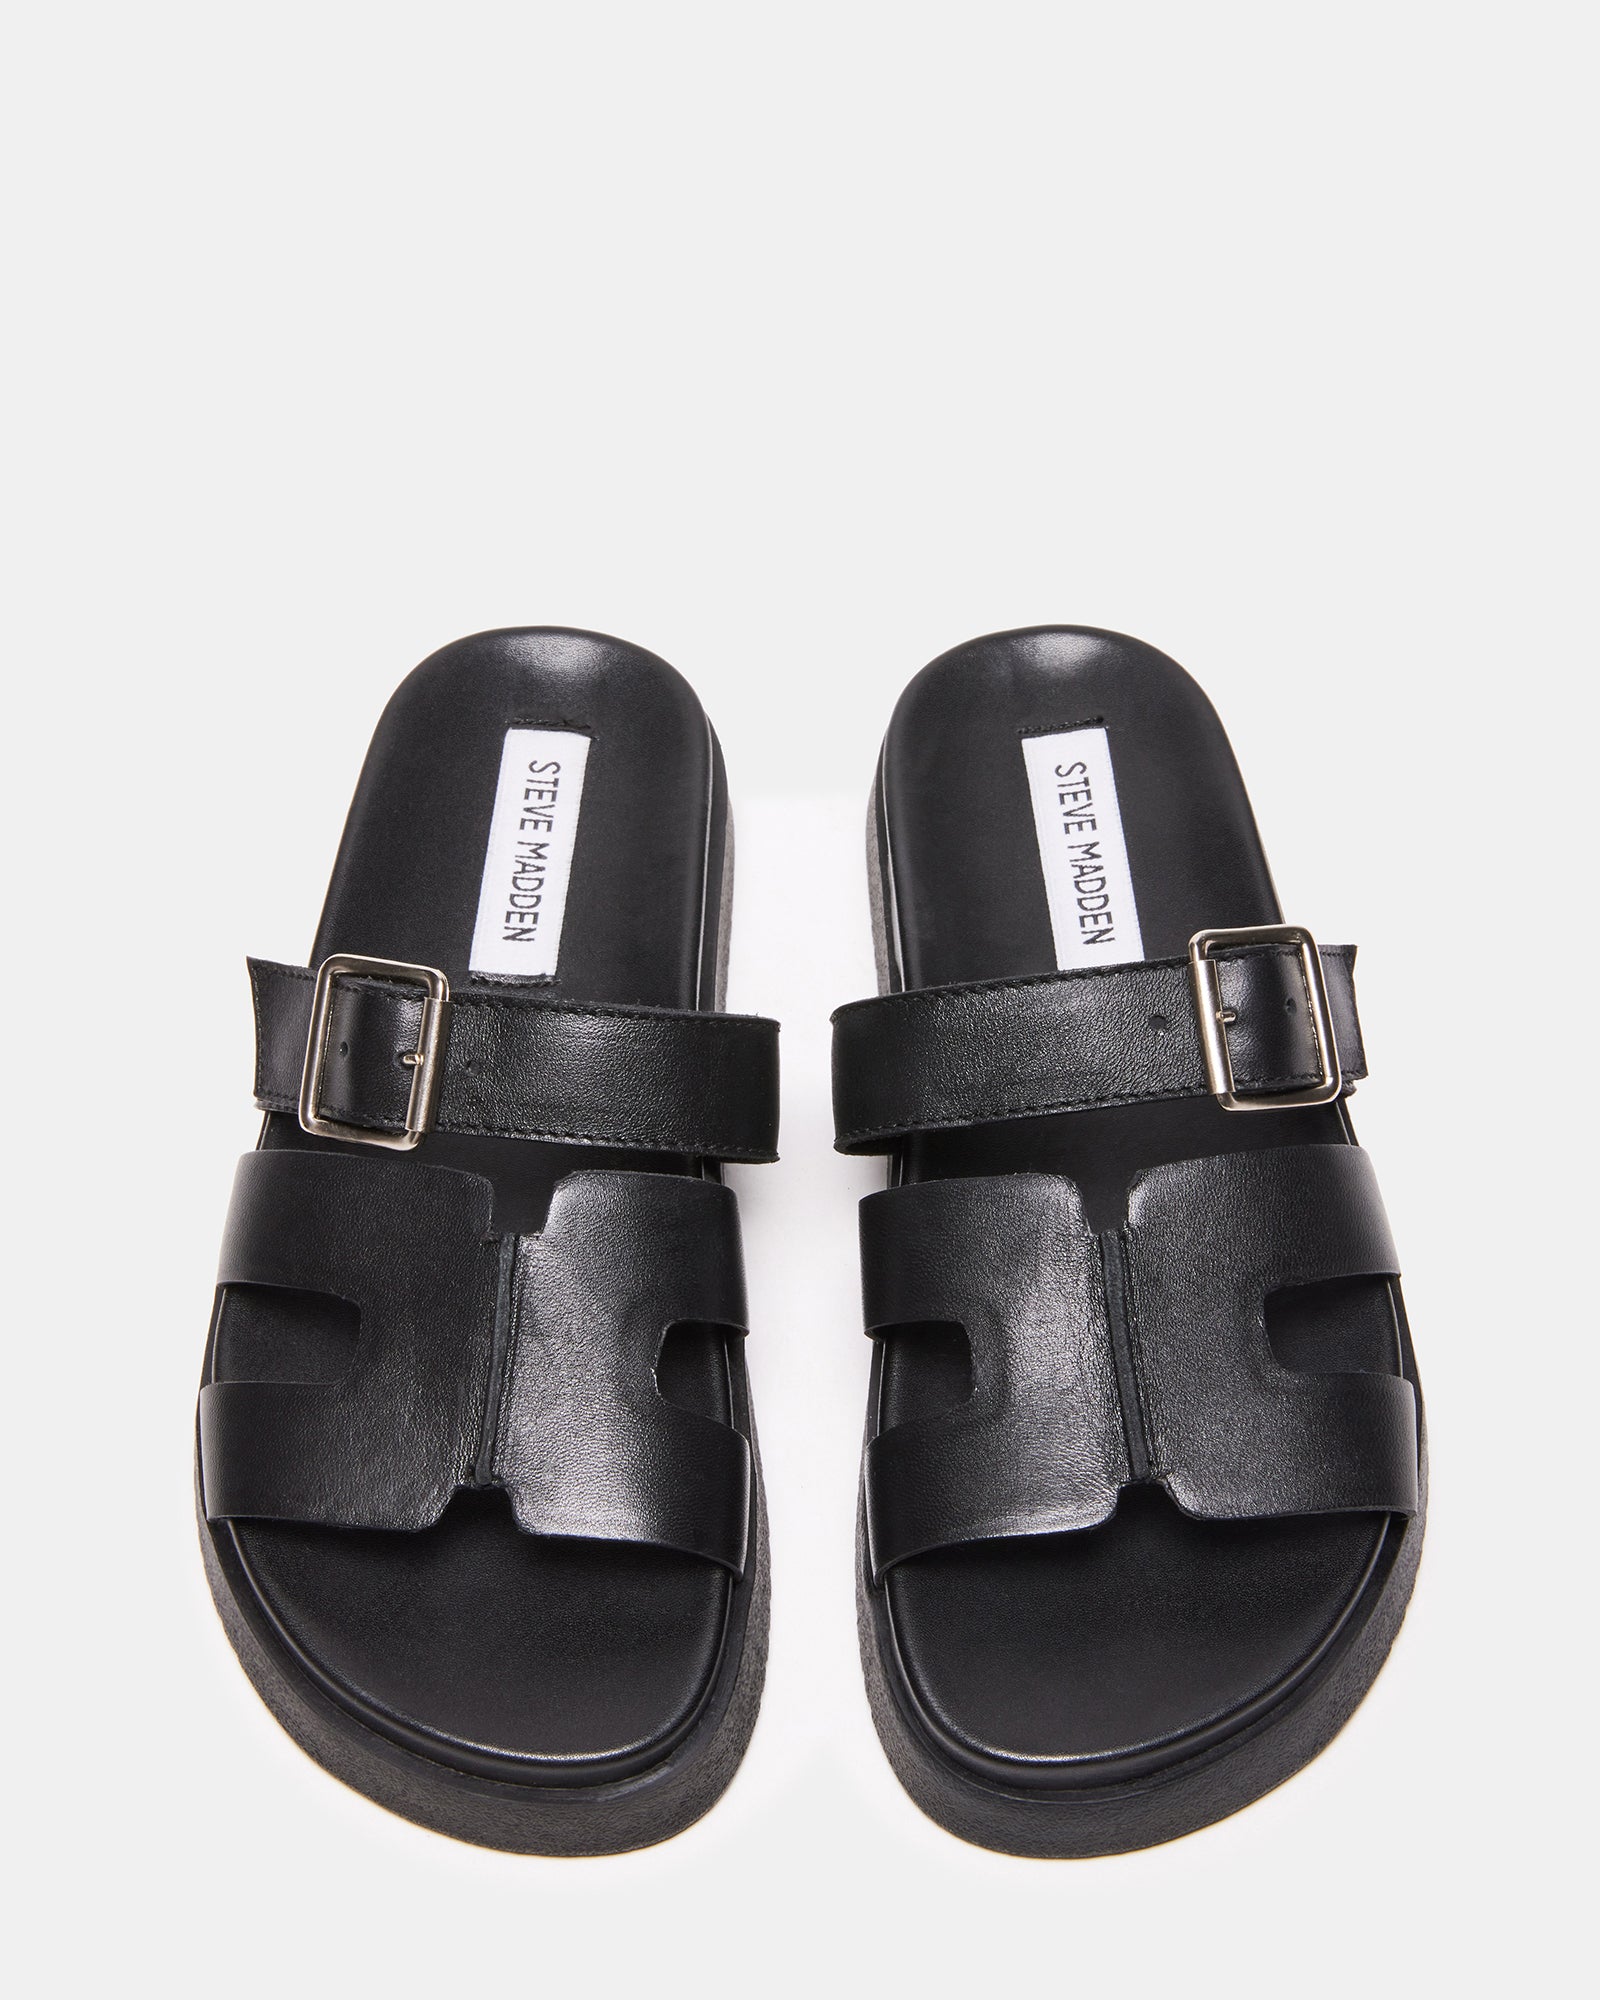 MAYHEM Black Leather Flatform Slide Sandal | Women's Sandals – Steve Madden